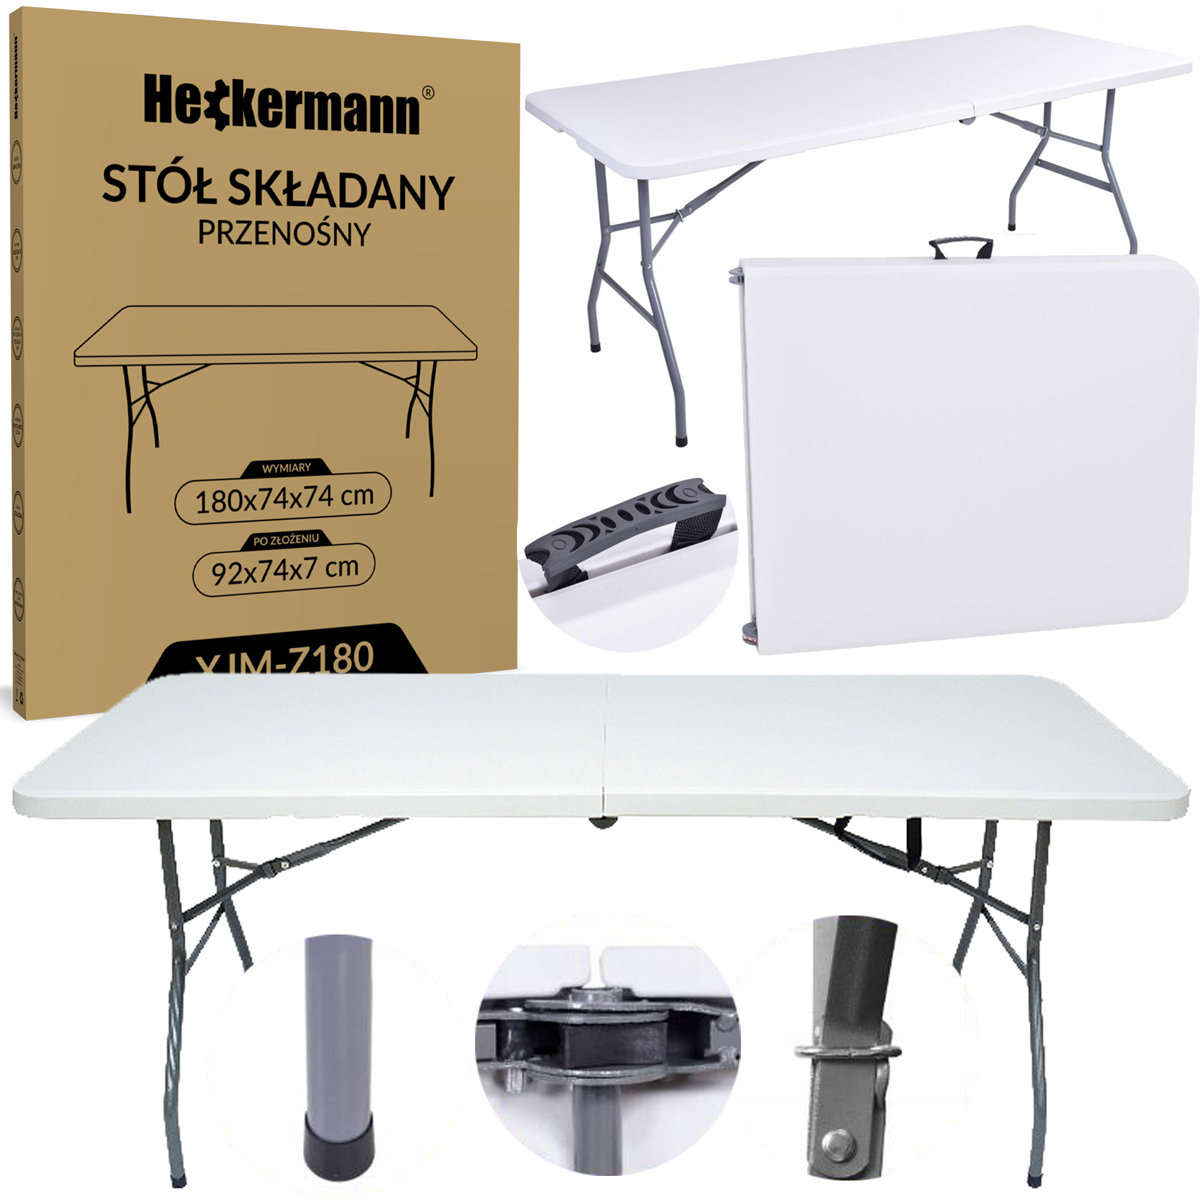 Stół składany 180x74cm turystyczny Heckermann XJM-Z180 Biały